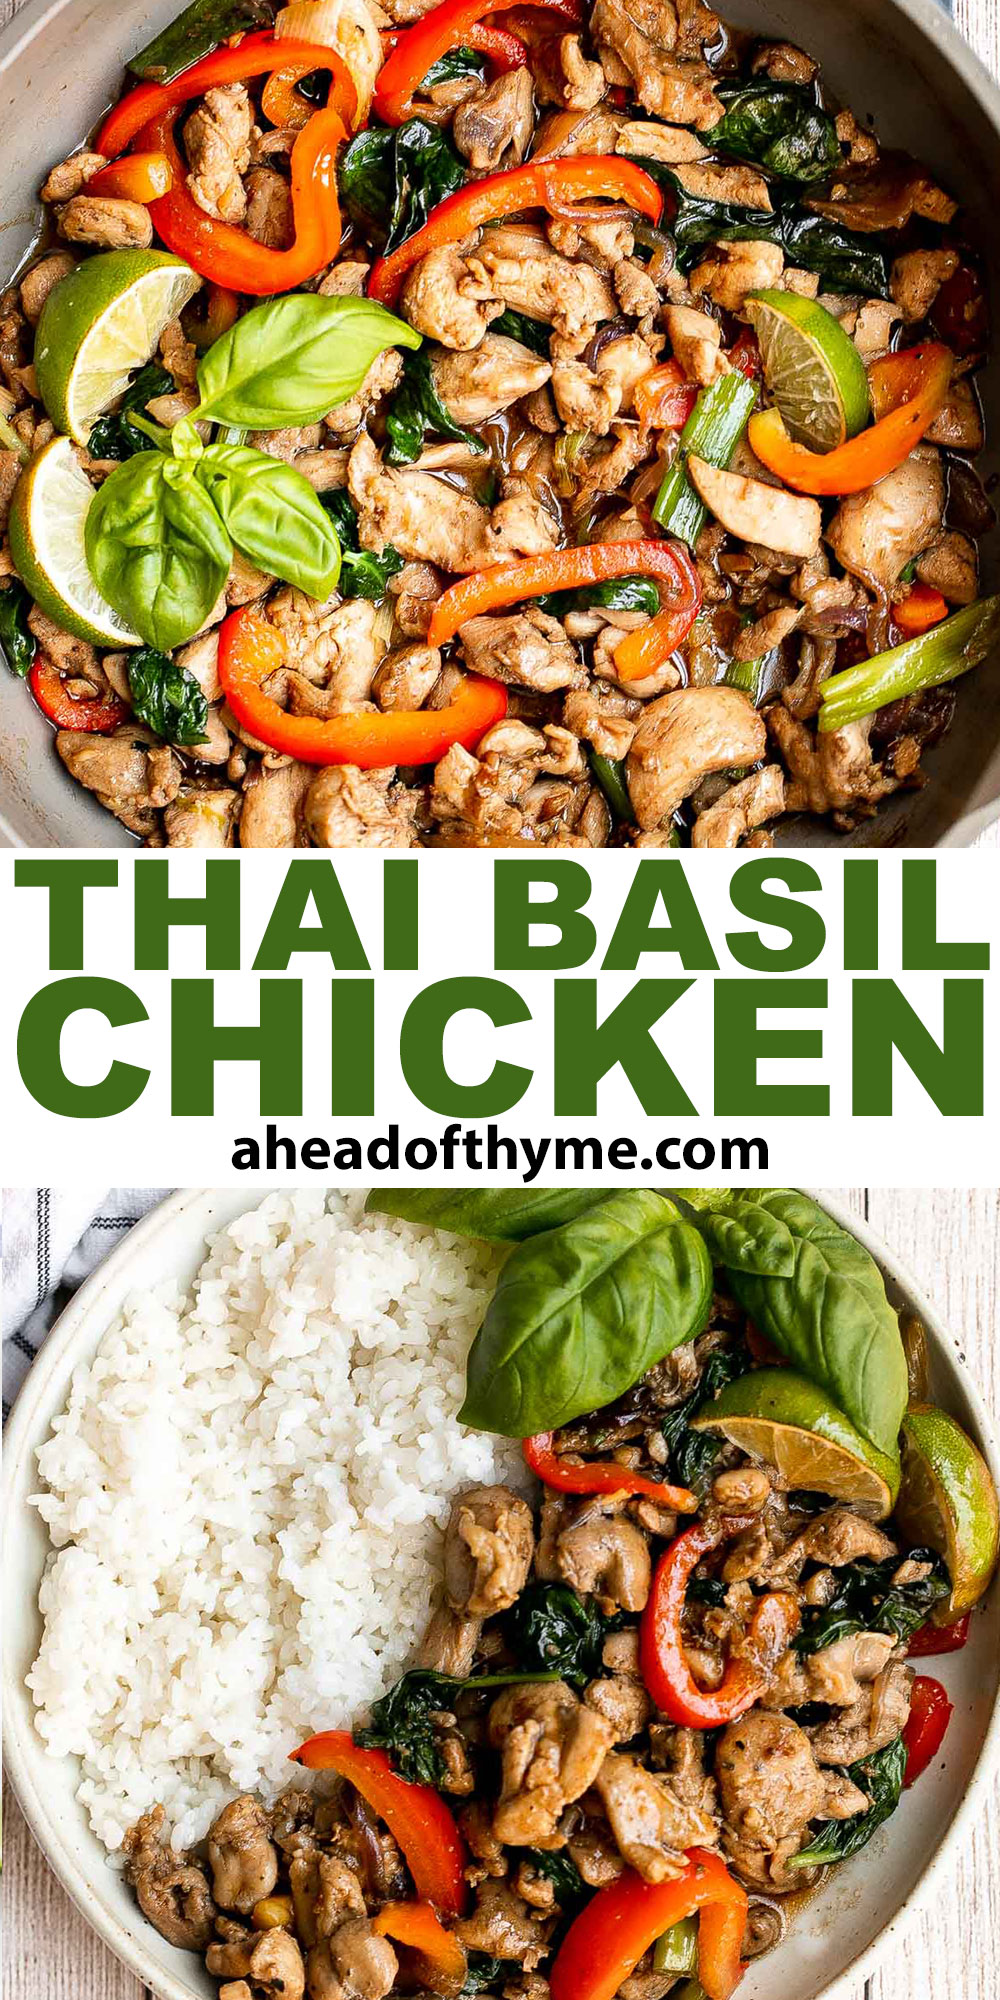 Thai Basil Chicken